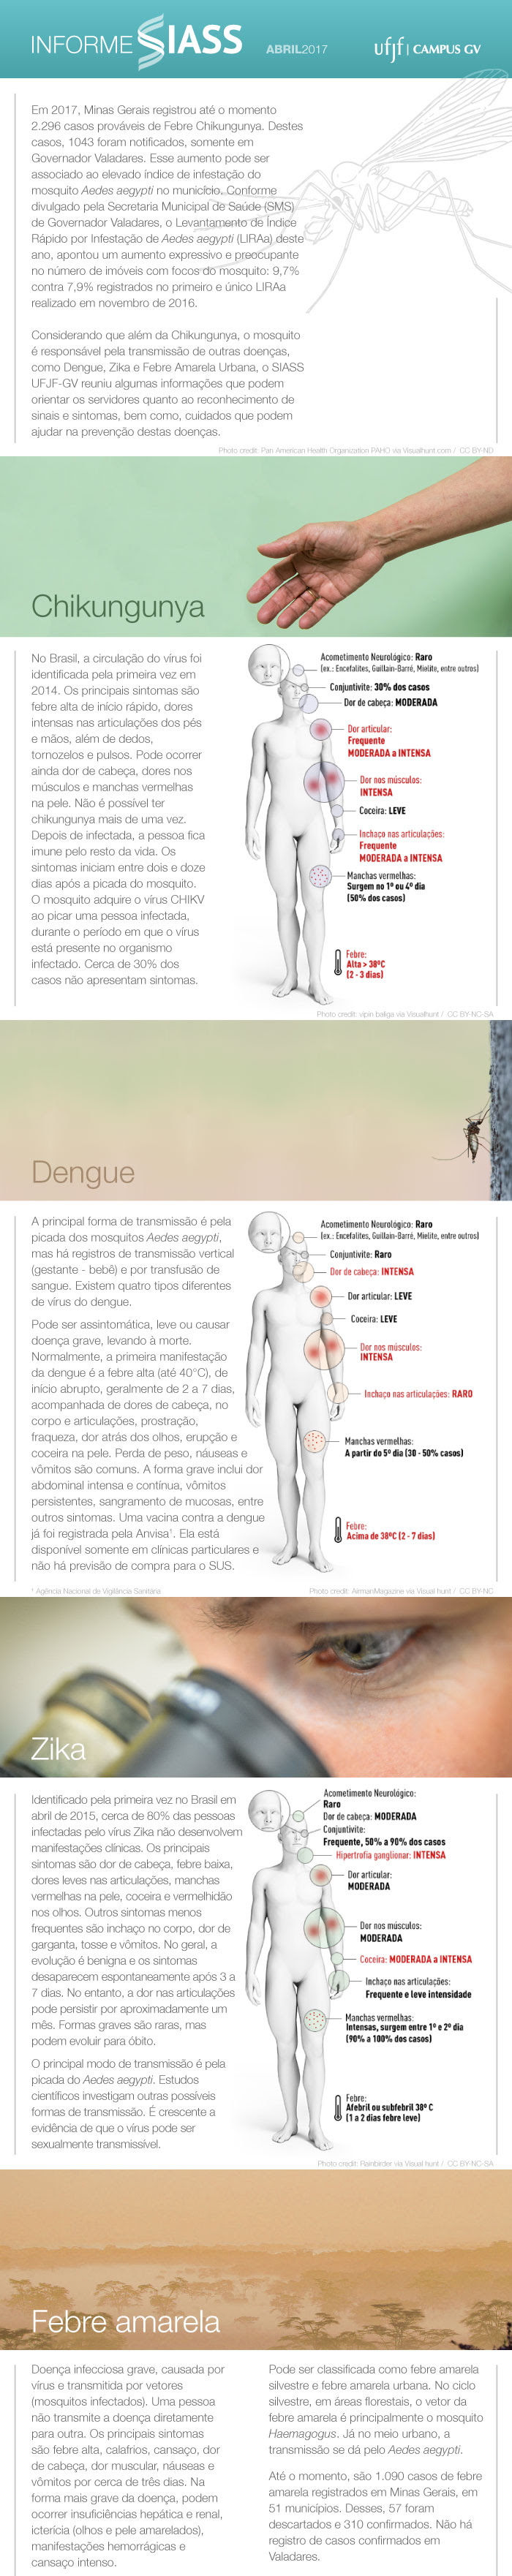 Informe do SIASS 2017 sobre as doenças transmitidas pelo Aedes Aegypti.